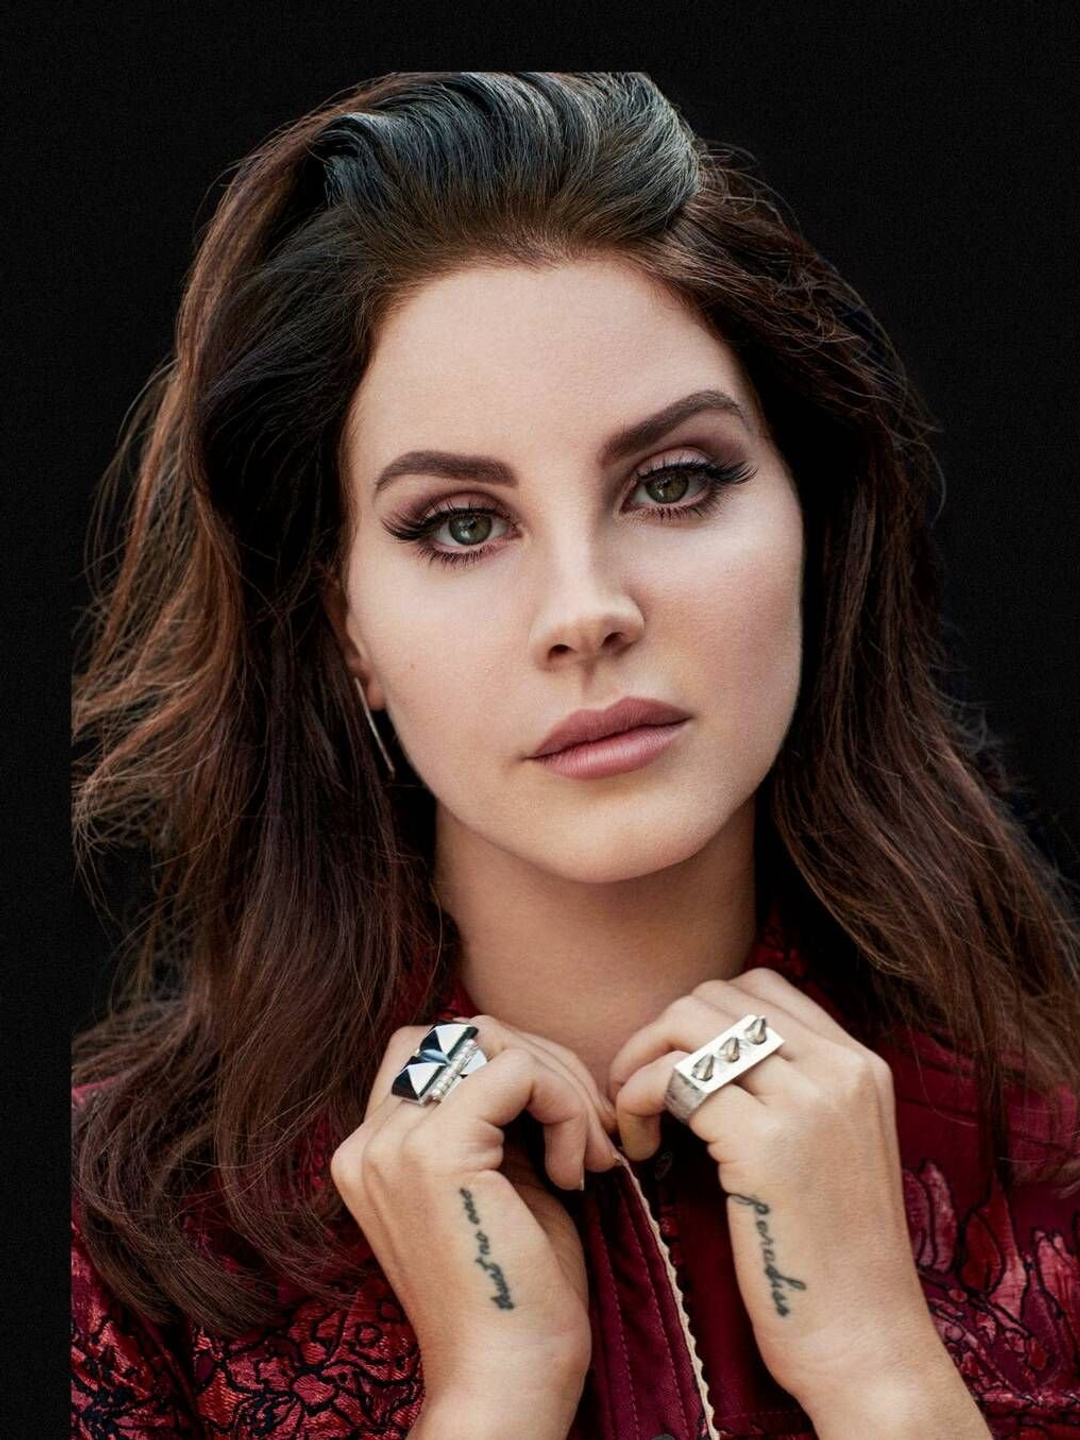 Lana Del Rey young pics